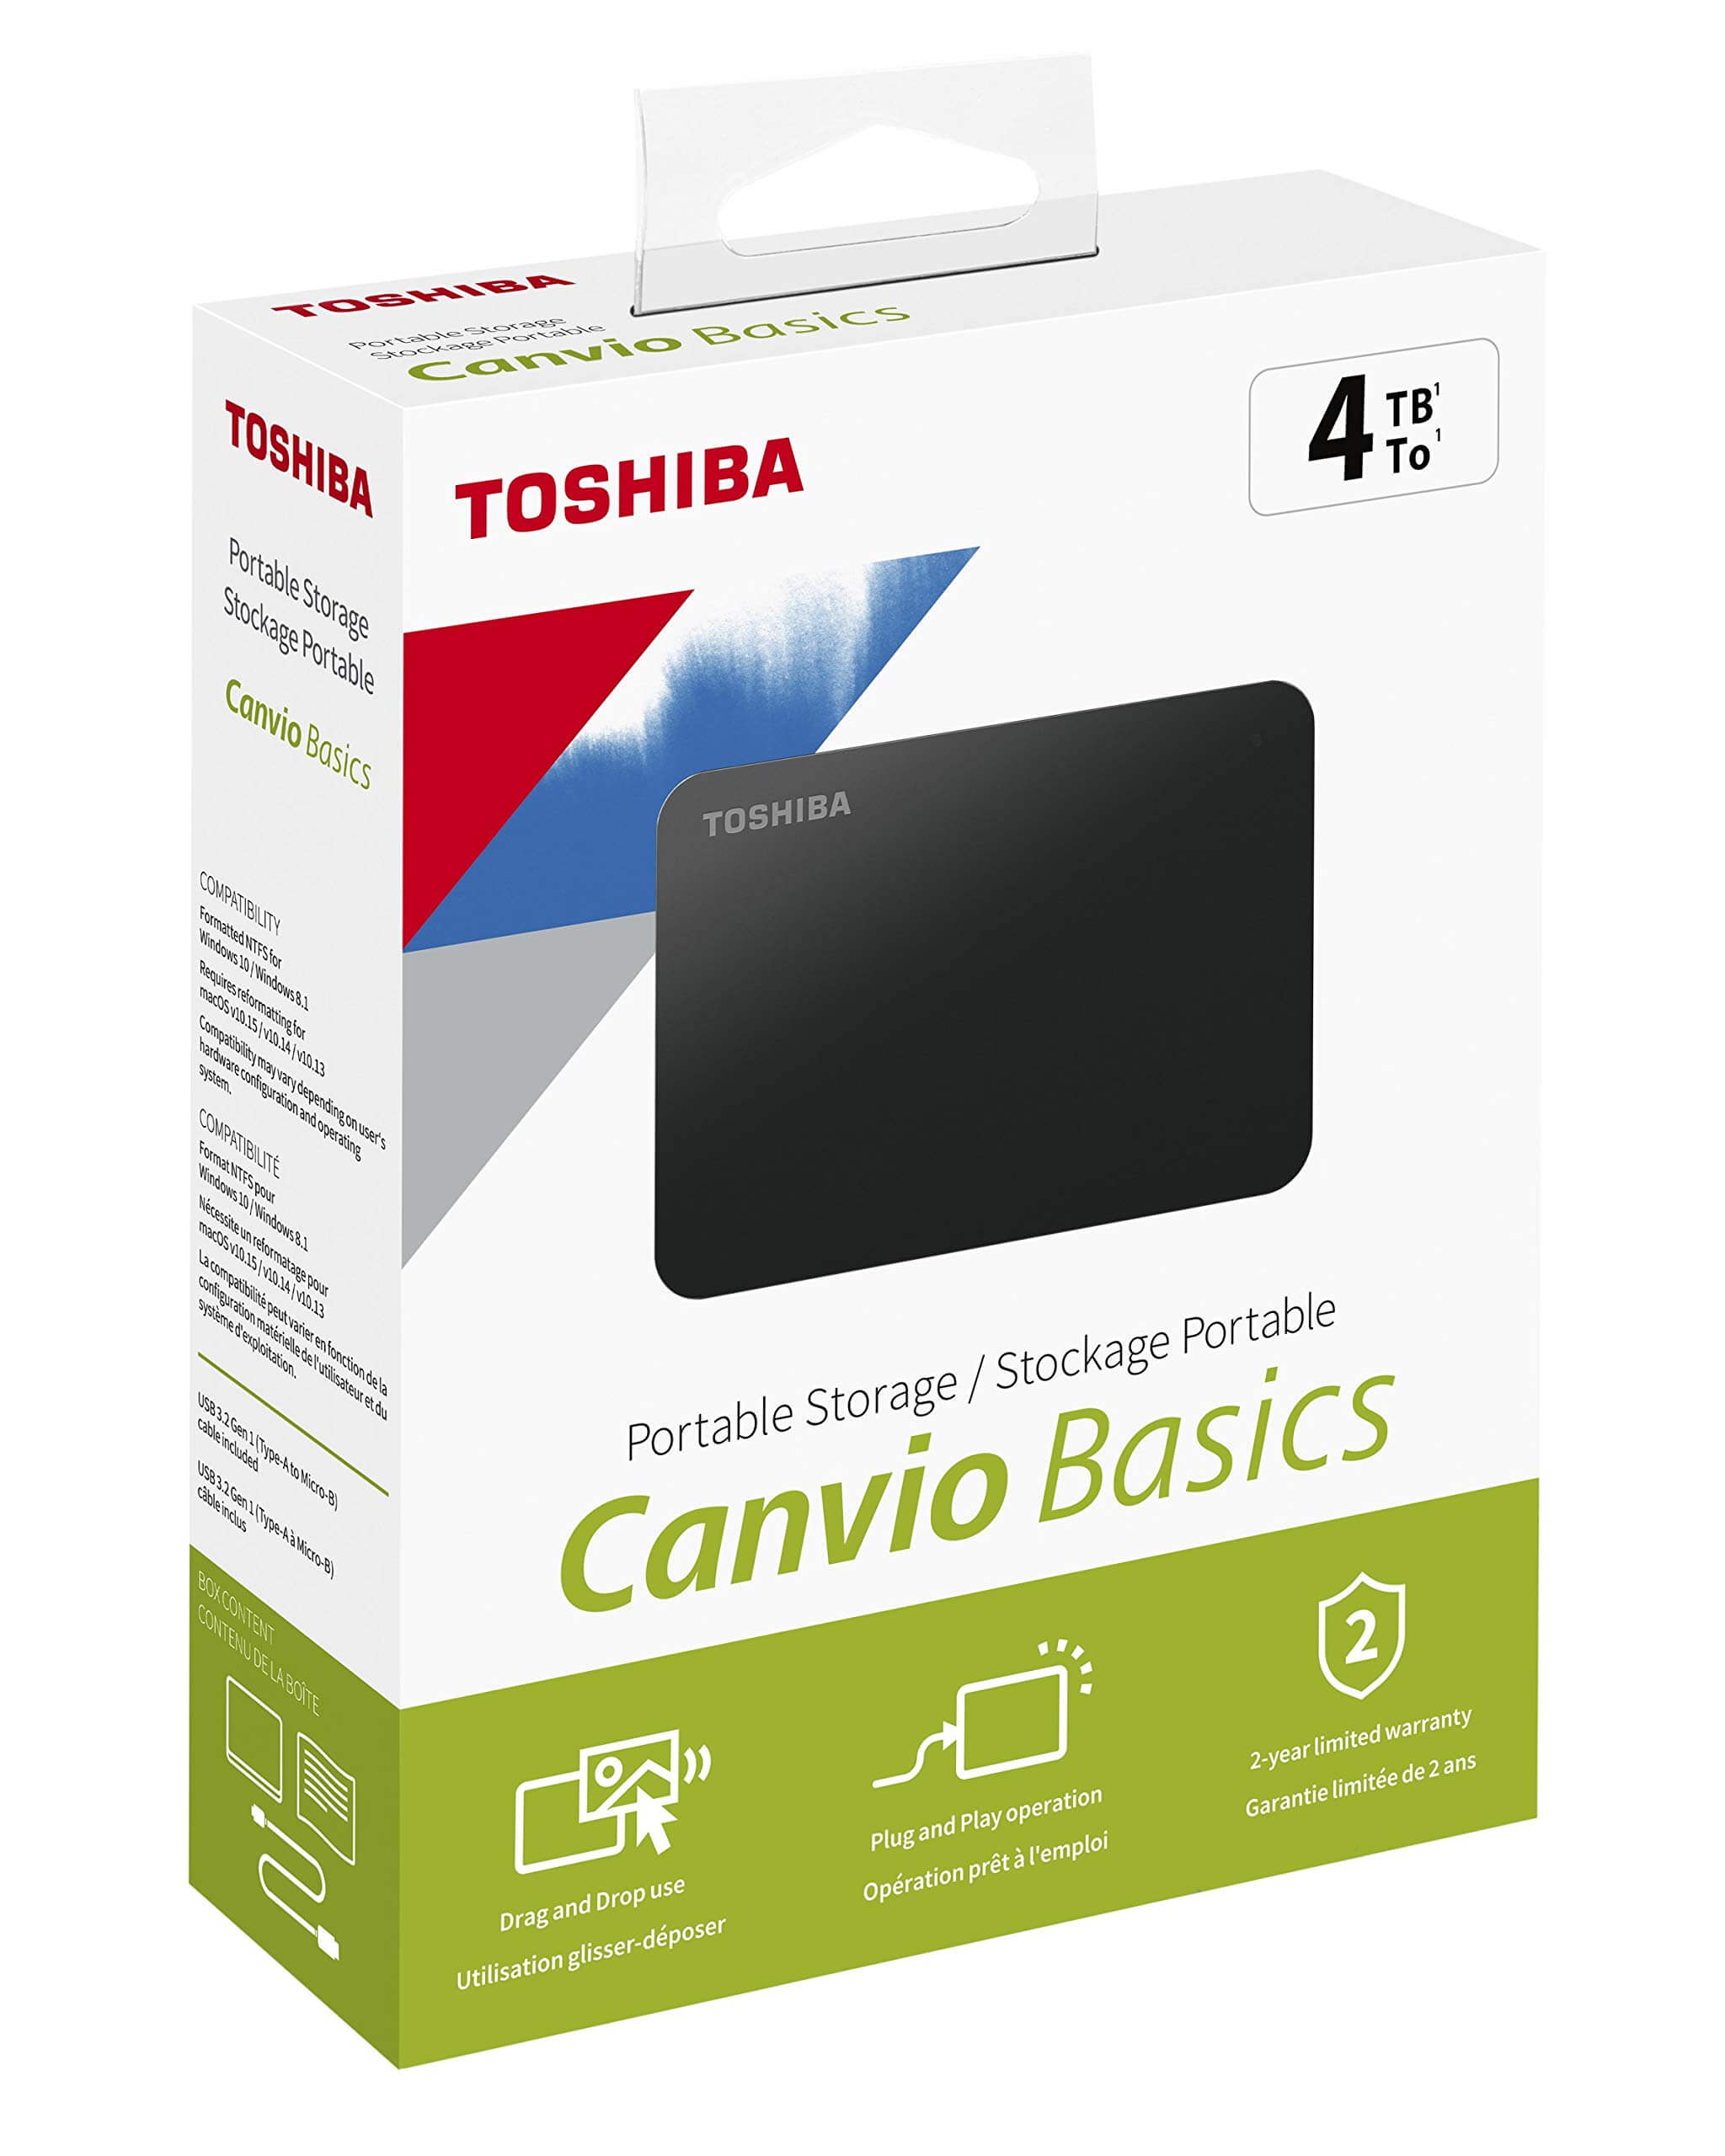 DYSK ZEWNĘTRZNY TOSHIBA CANVIO BASICS 4TB 2,5